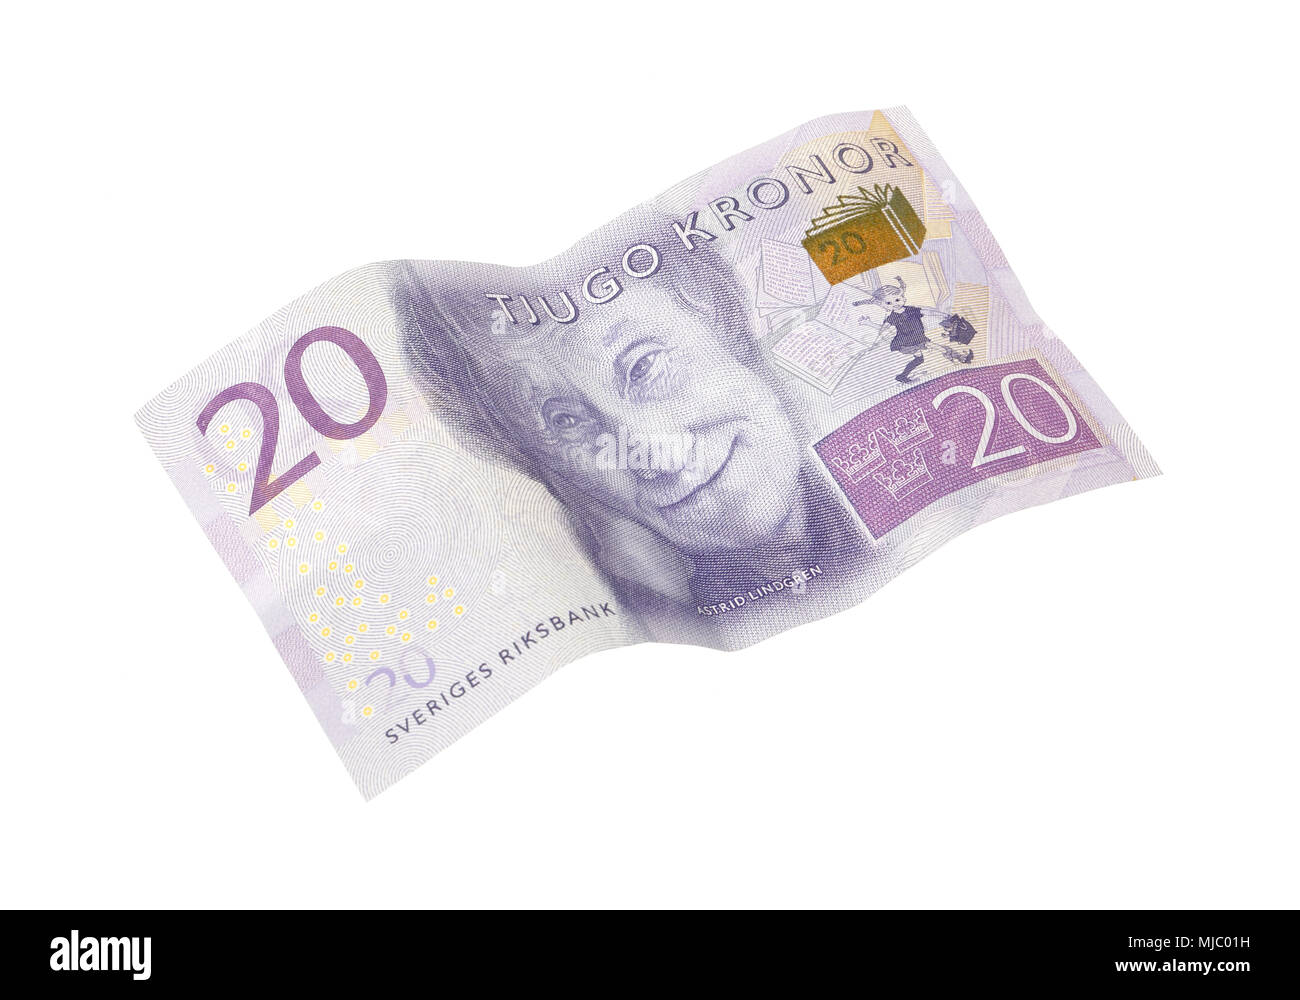 Stockholm, Schweden, 11. Dezember 2015: Eine Schwedische 20 Kronen Banknote mit Porträts von Astrid Lindgren. Diese Banknote war im Herbst 20 eingeführt. Stockfoto